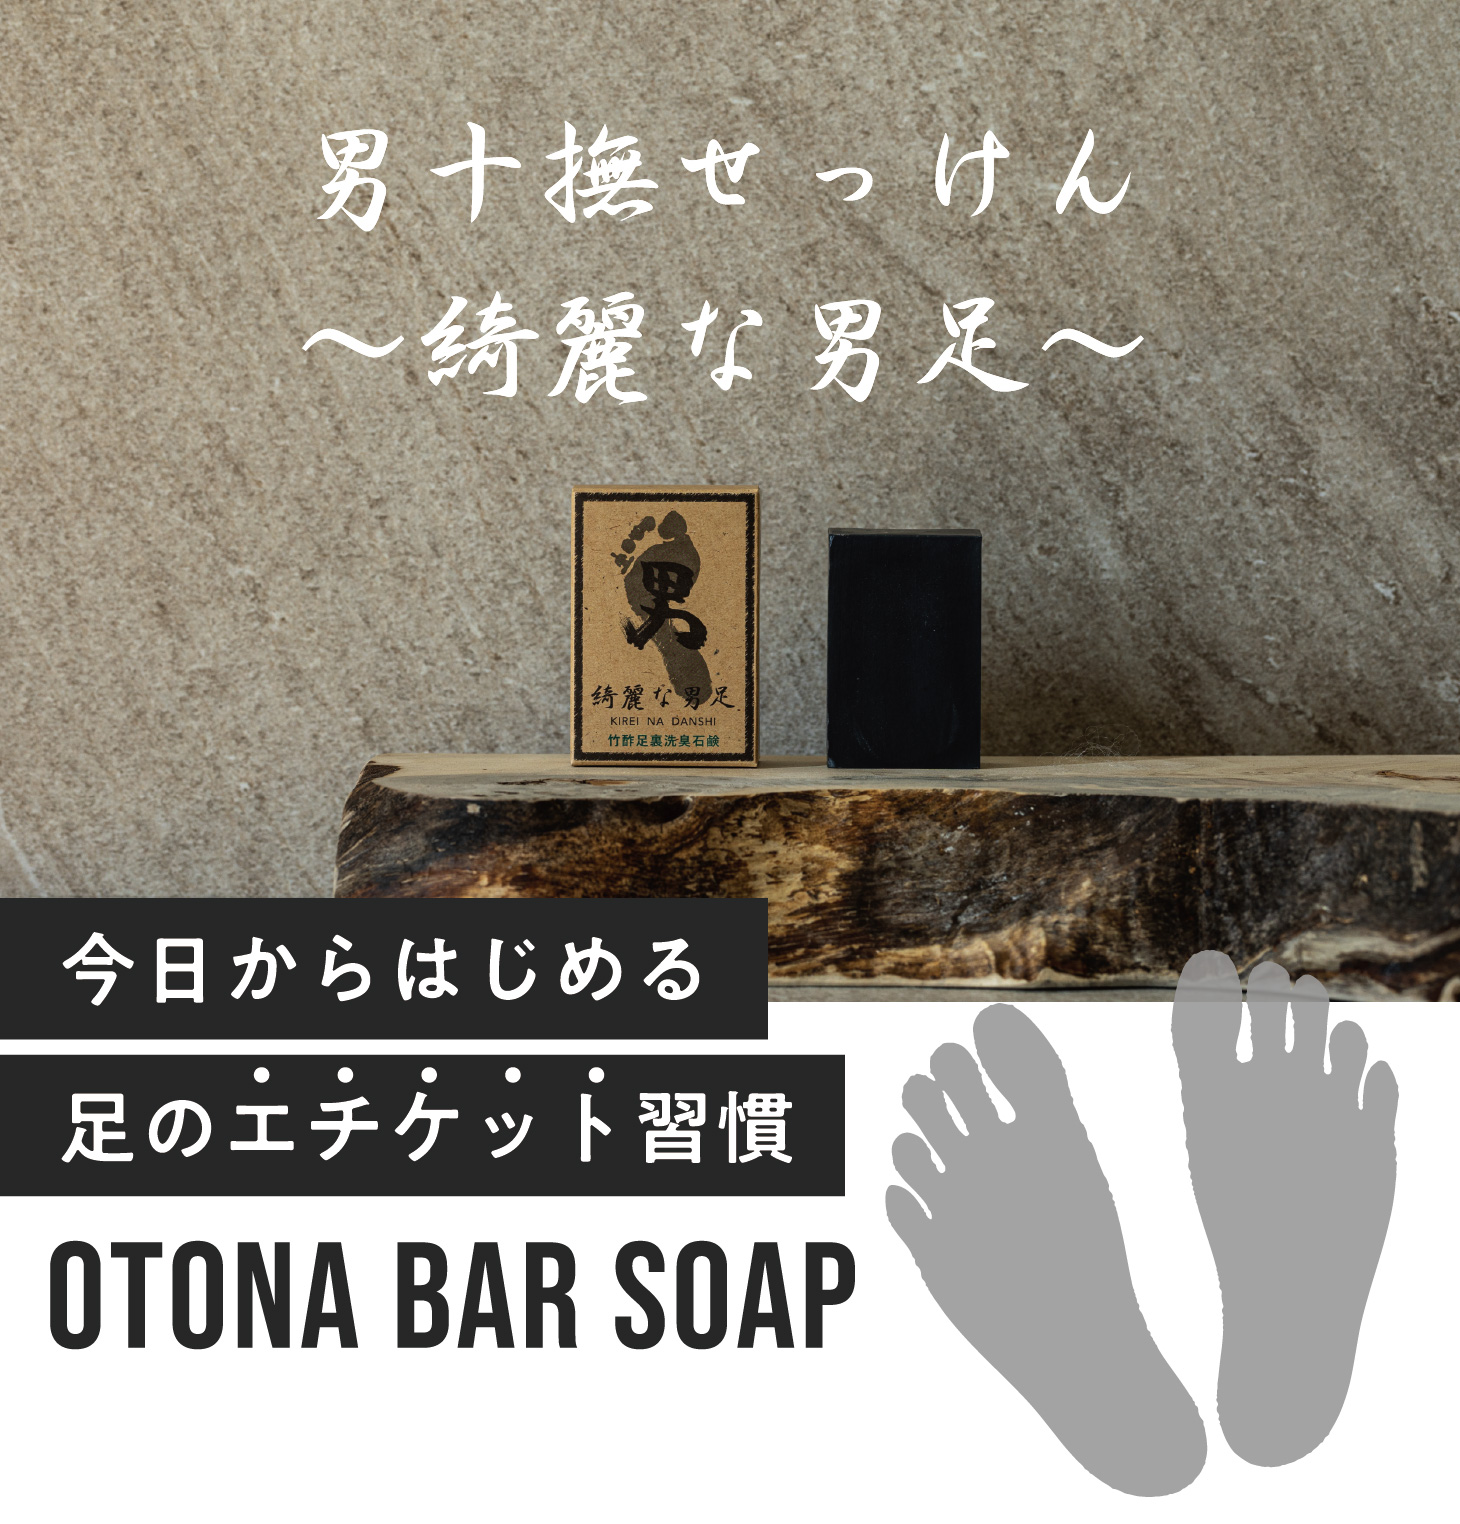 男十撫せっけん 〜綺麗な男足〜 今日からはじめる足のエチケット習慣 OTONA bar soap